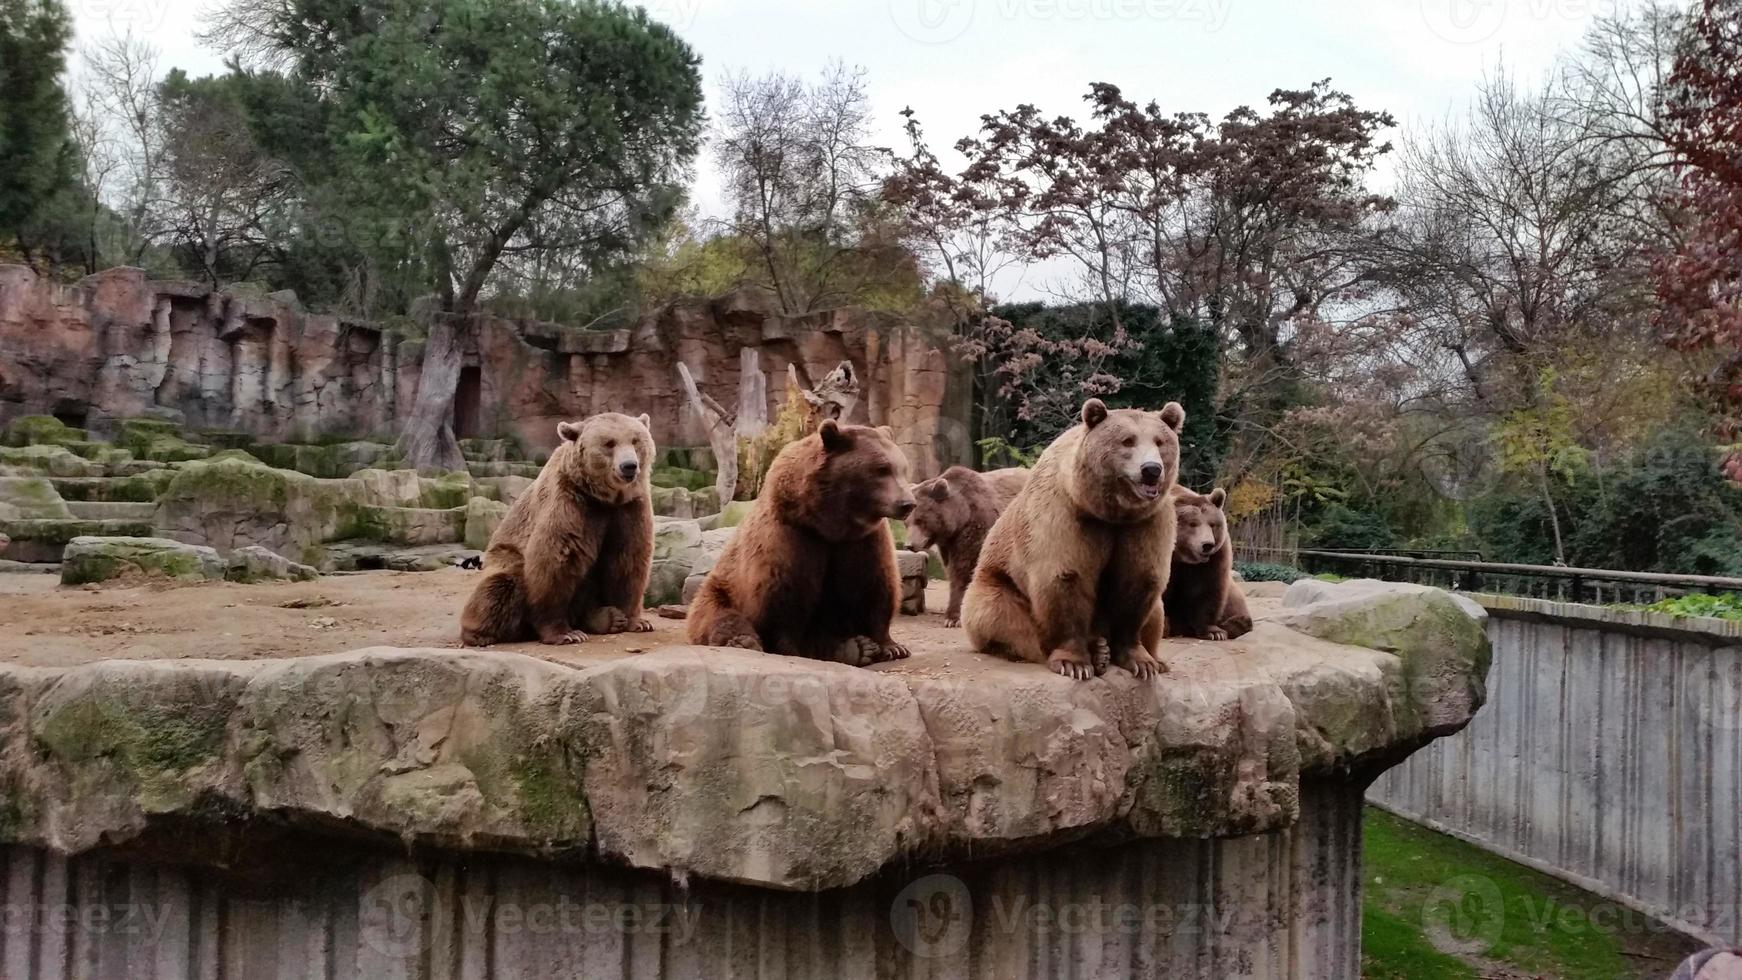 des hordes d'ours bruns sont assis à regarder les visiteurs photo